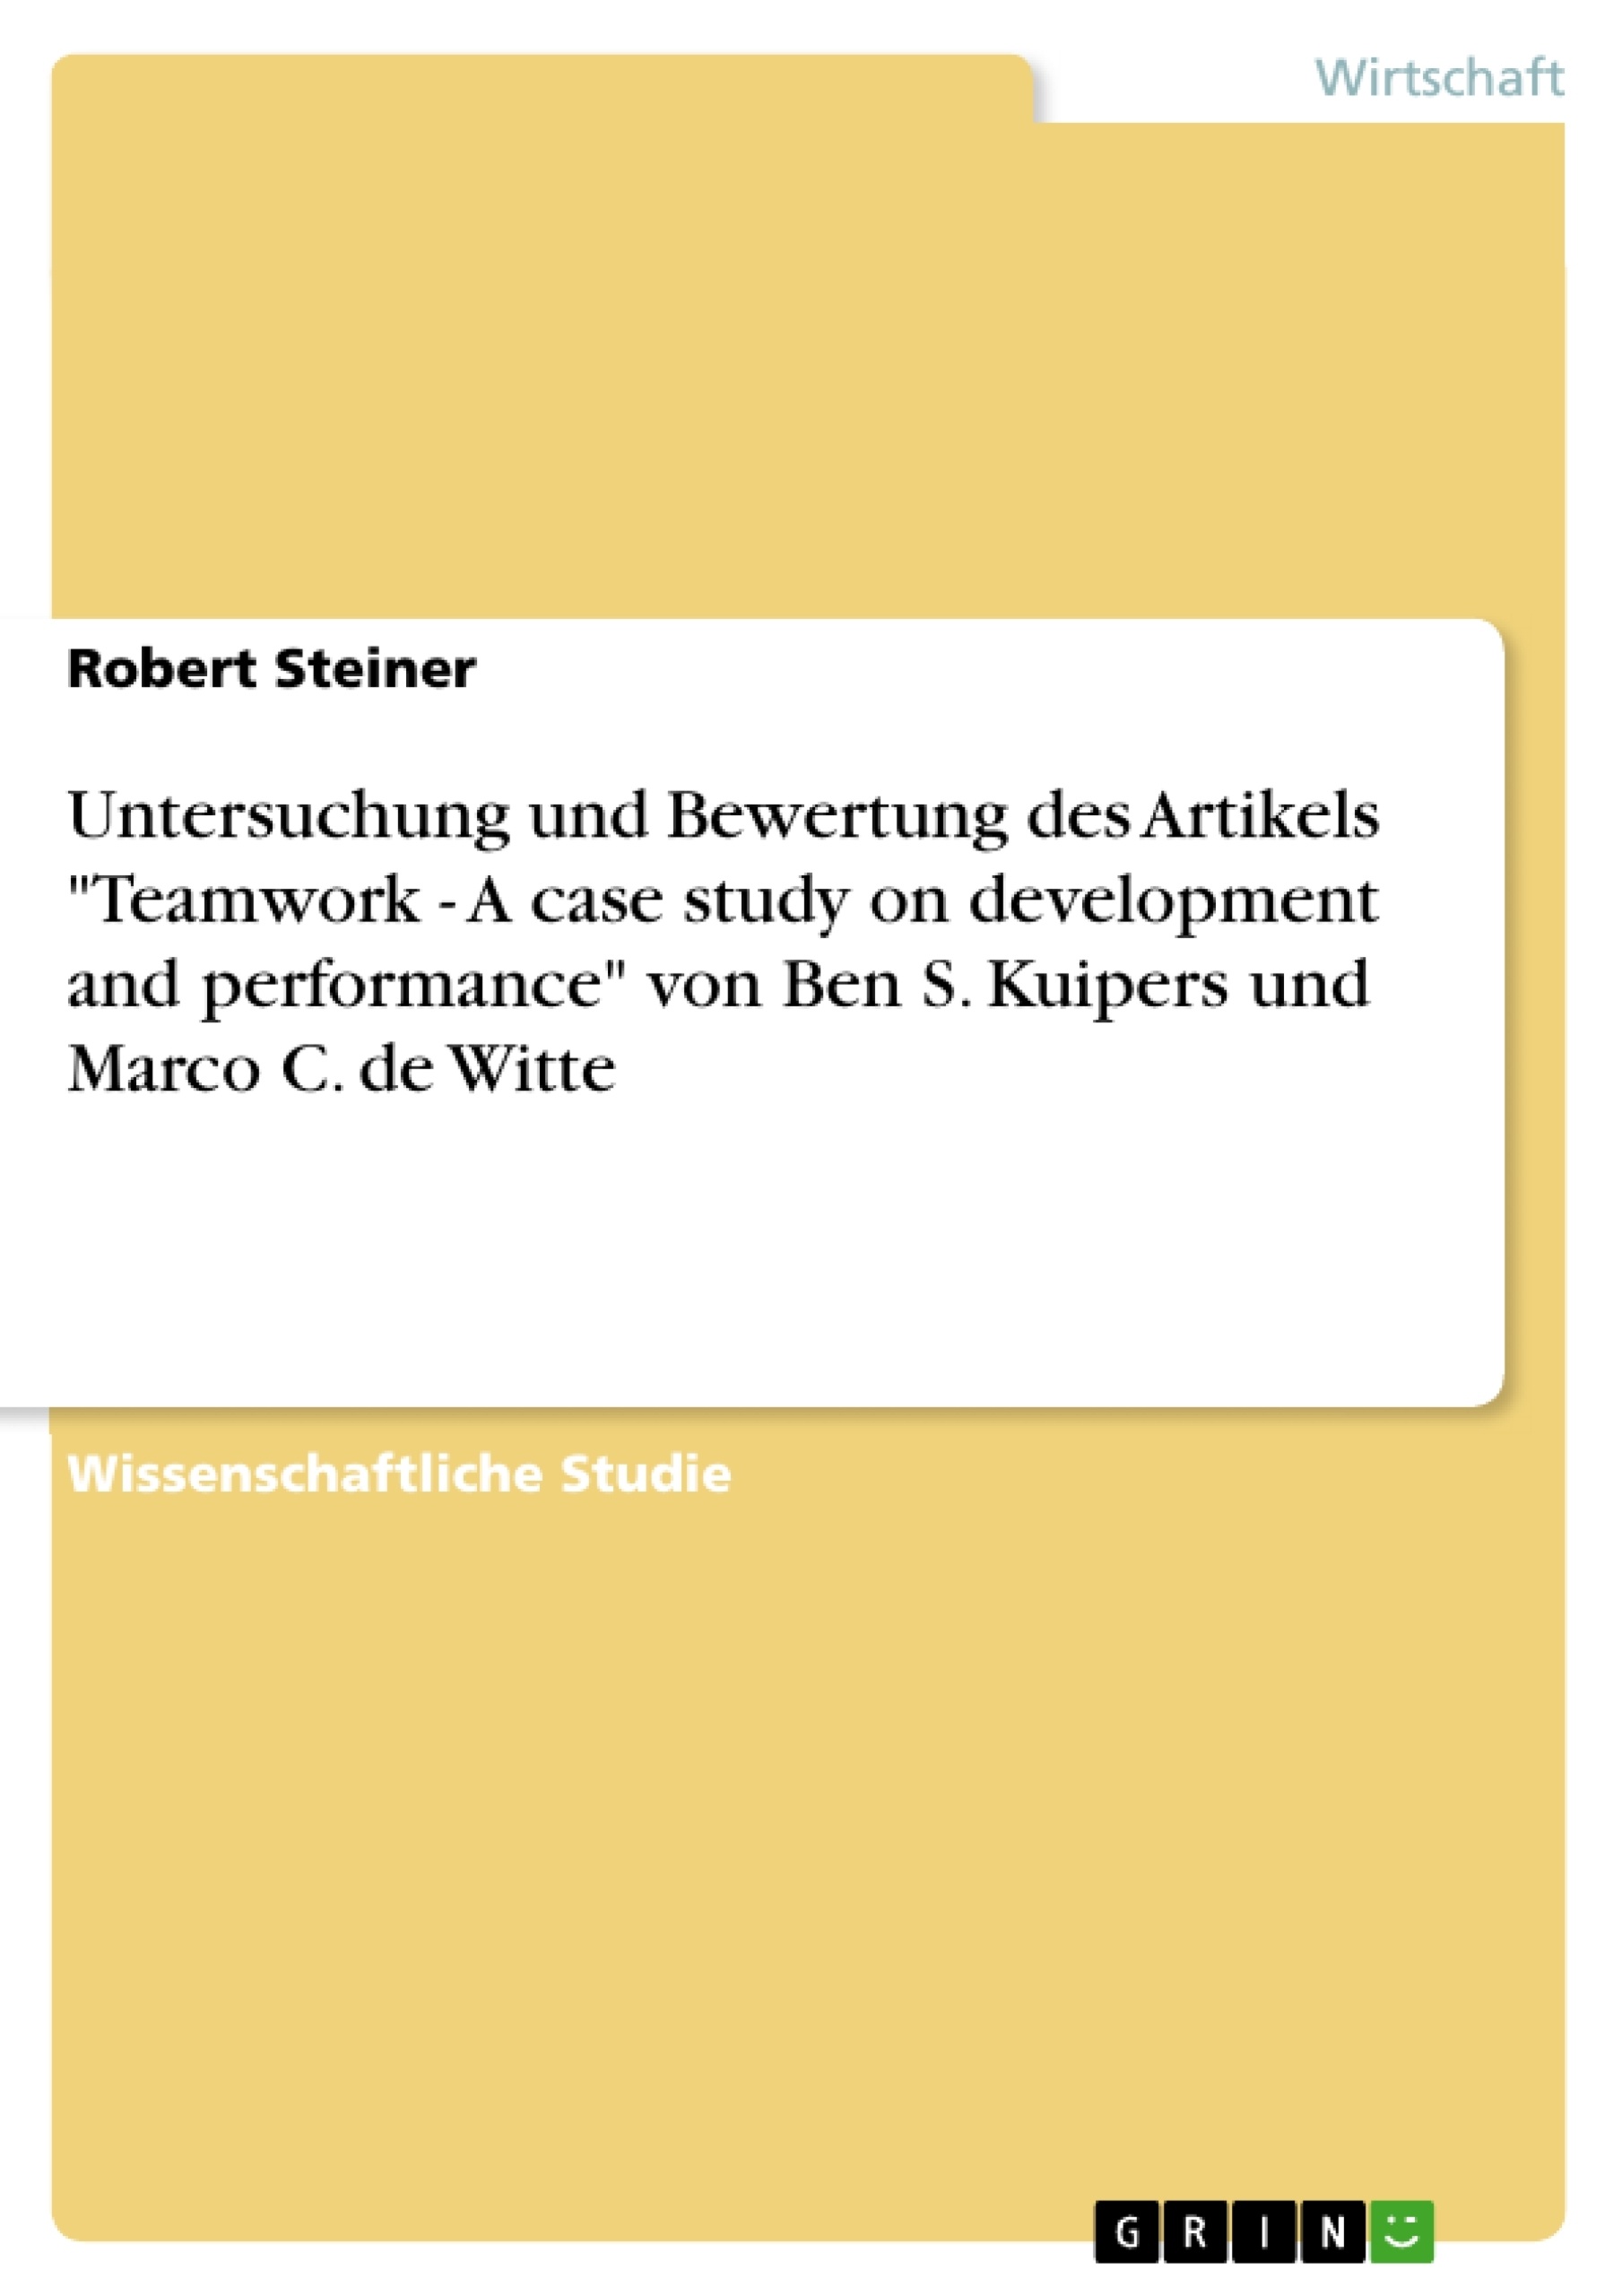 Titre: Untersuchung und Bewertung des Artikels "Teamwork - A case study on development and performance" von Ben S. Kuipers und Marco C. de Witte